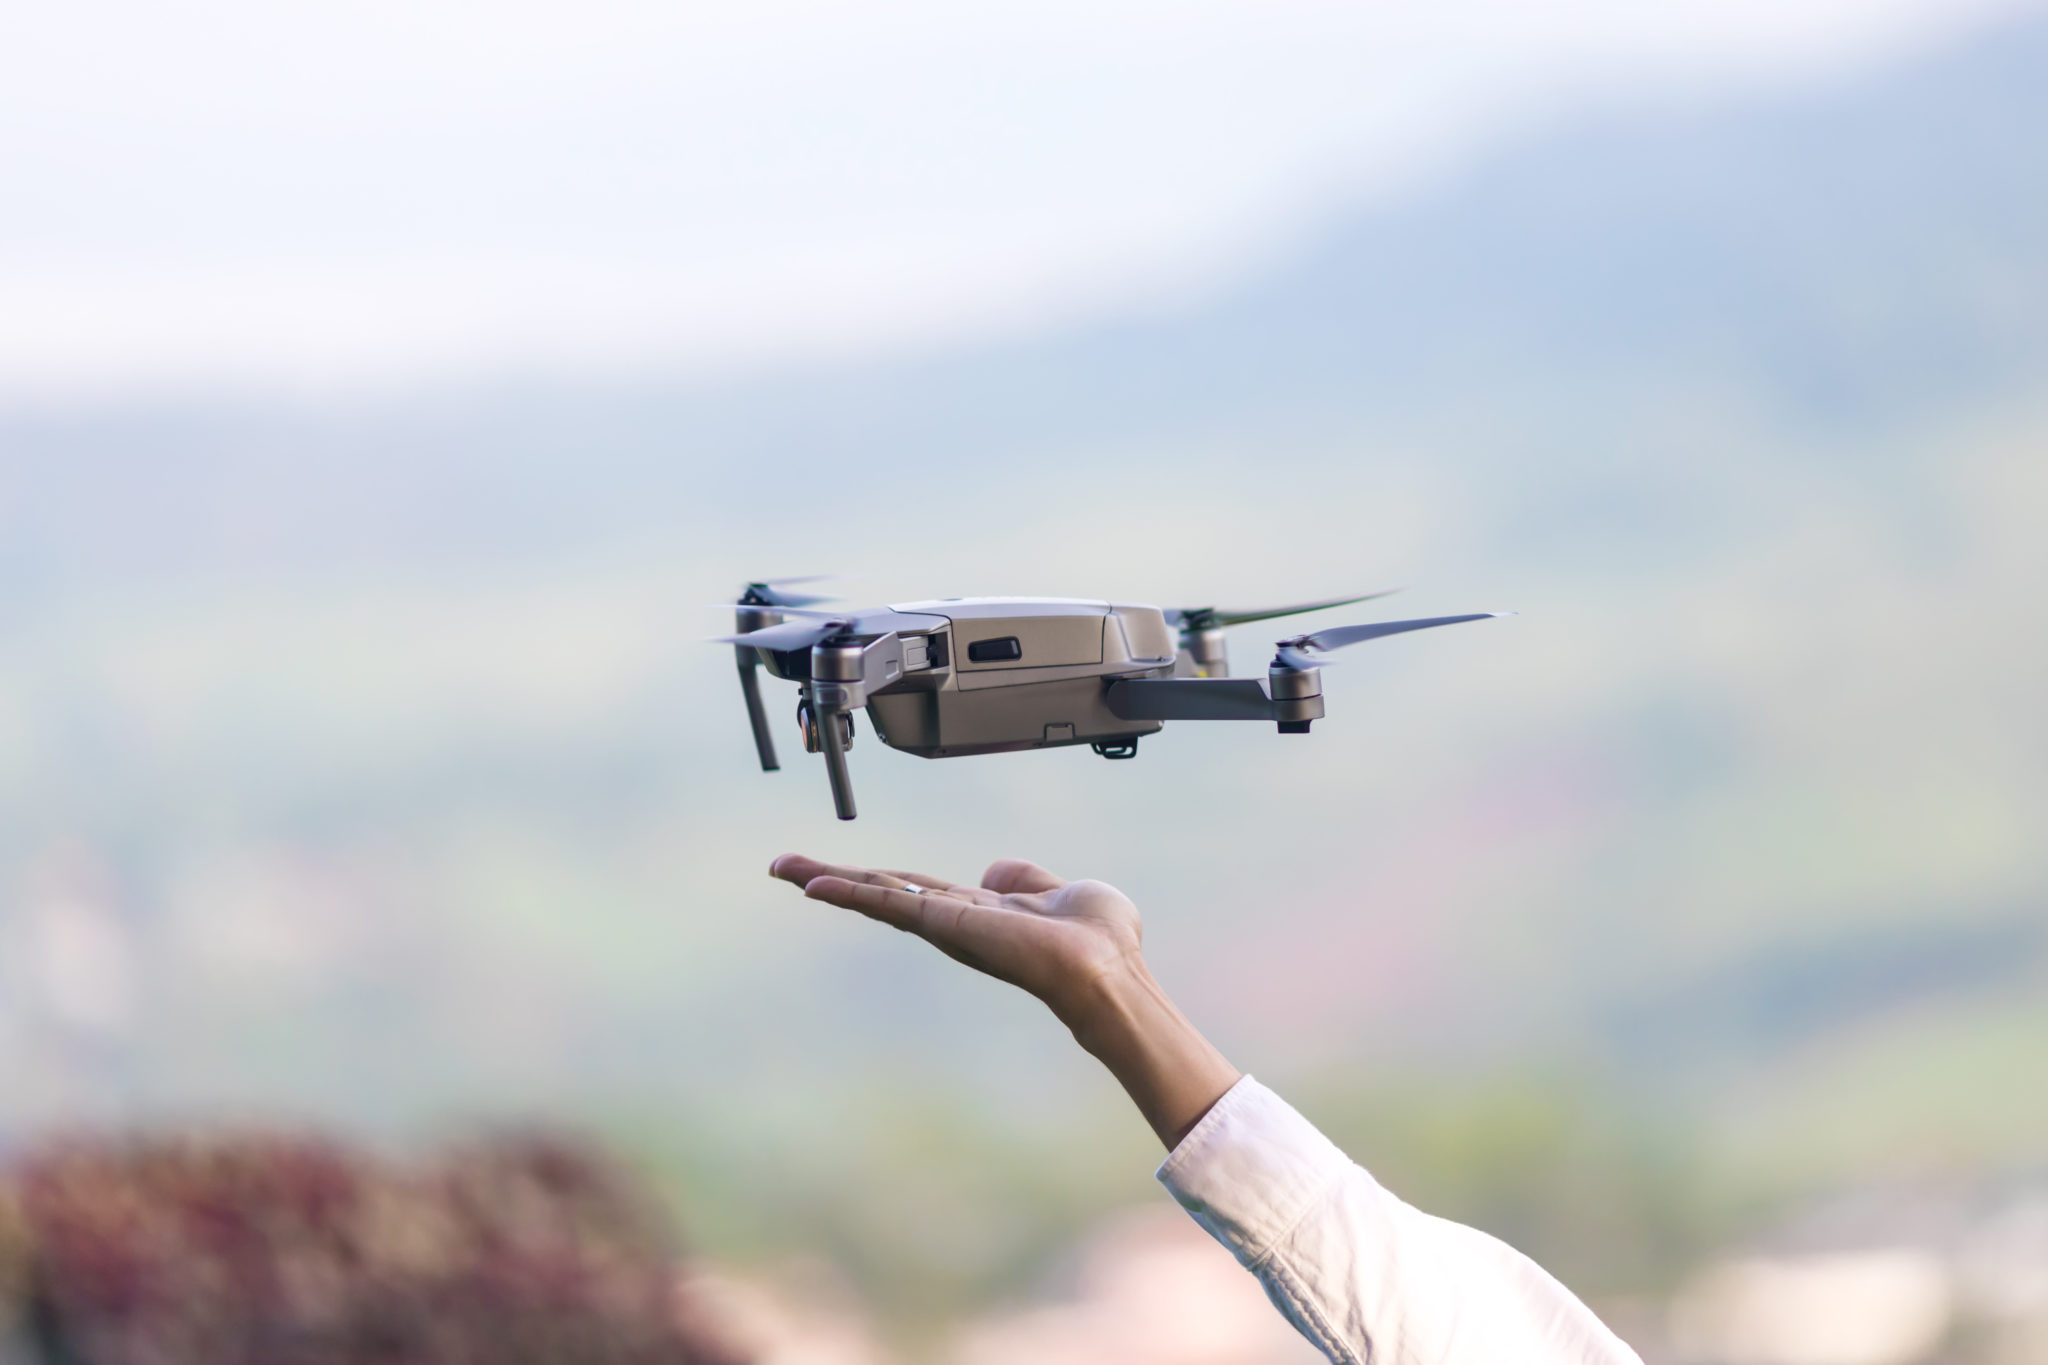 Choisir la bonne batterie pour son drone, les notions à connaître pour tout  comprendre - France-Drone, l'actualité du Drone